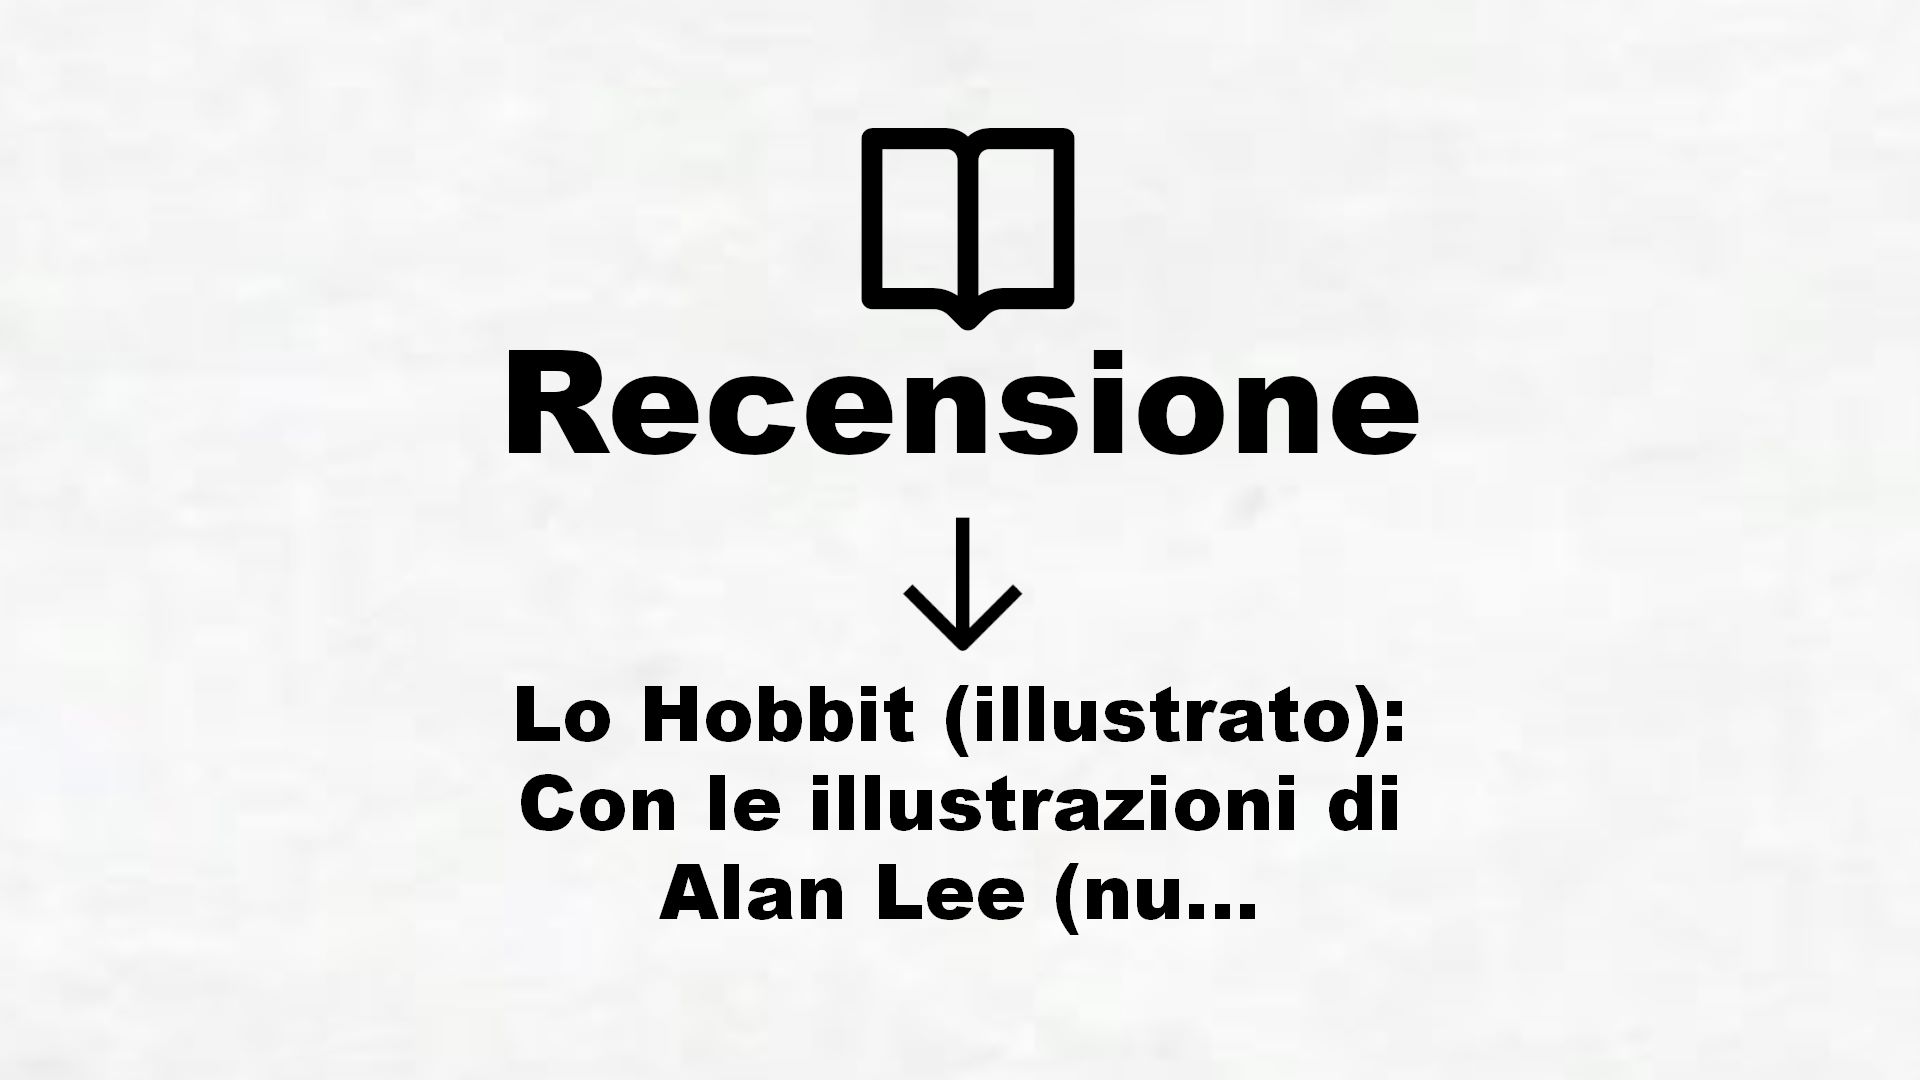 Lo Hobbit (illustrato): Con le illustrazioni di Alan Lee (nuova edizione Vol. 1210) – Recensione Libro